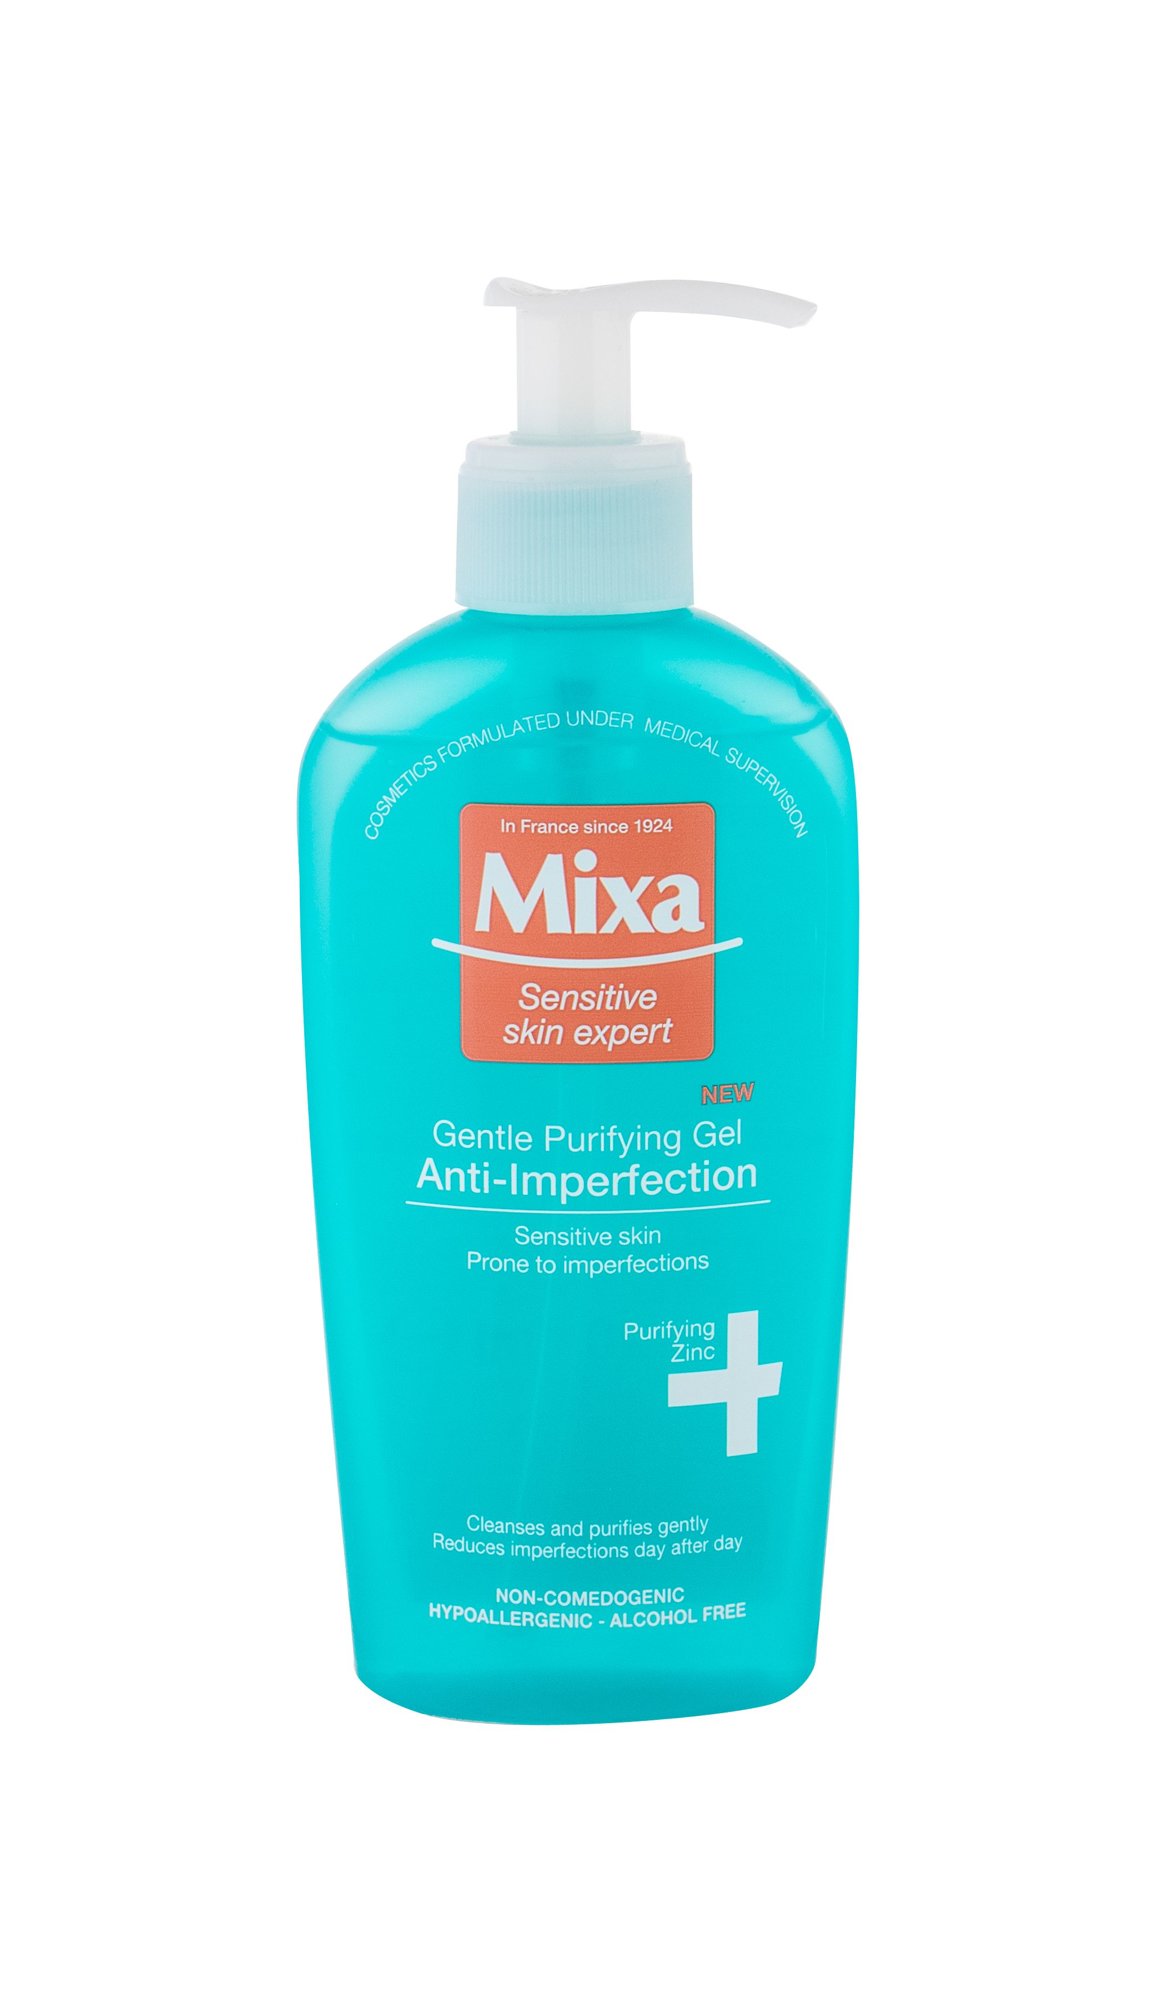 Mixa Sensitive Skin Expert Gentle Purifying Gel veido gelis